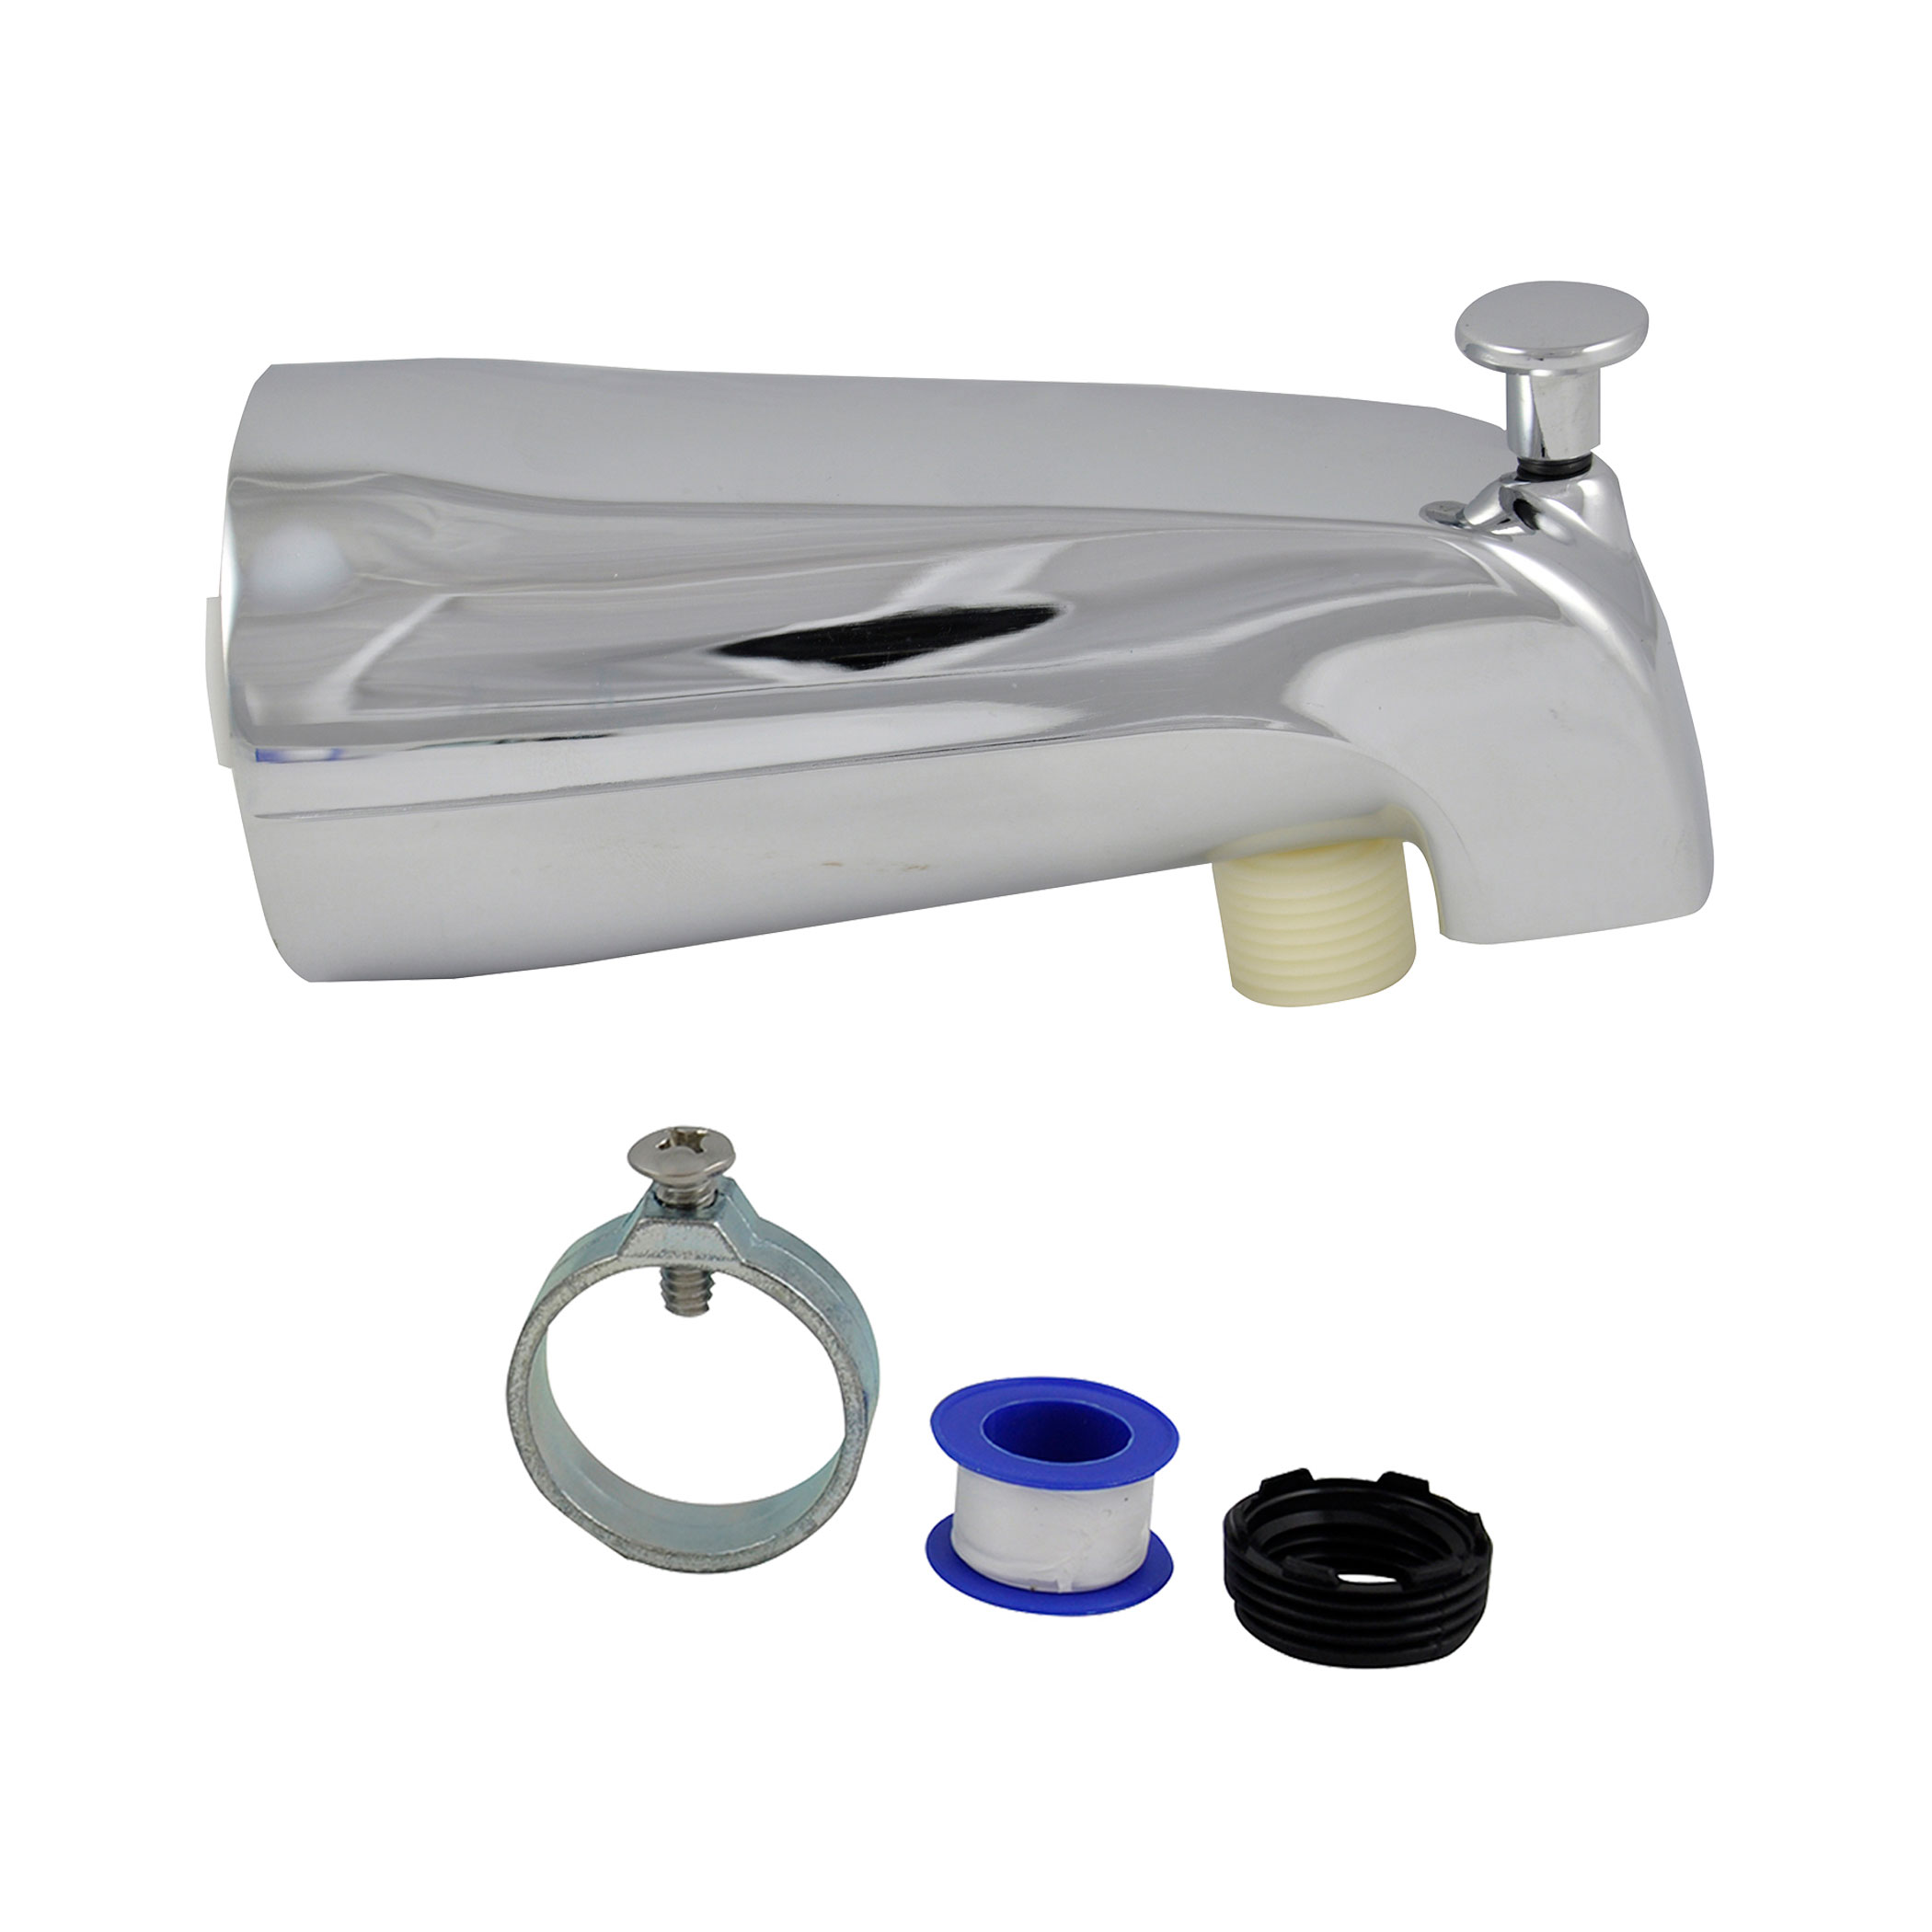 Universal Tub Spout With Handheld, Bathtub Faucet Parts